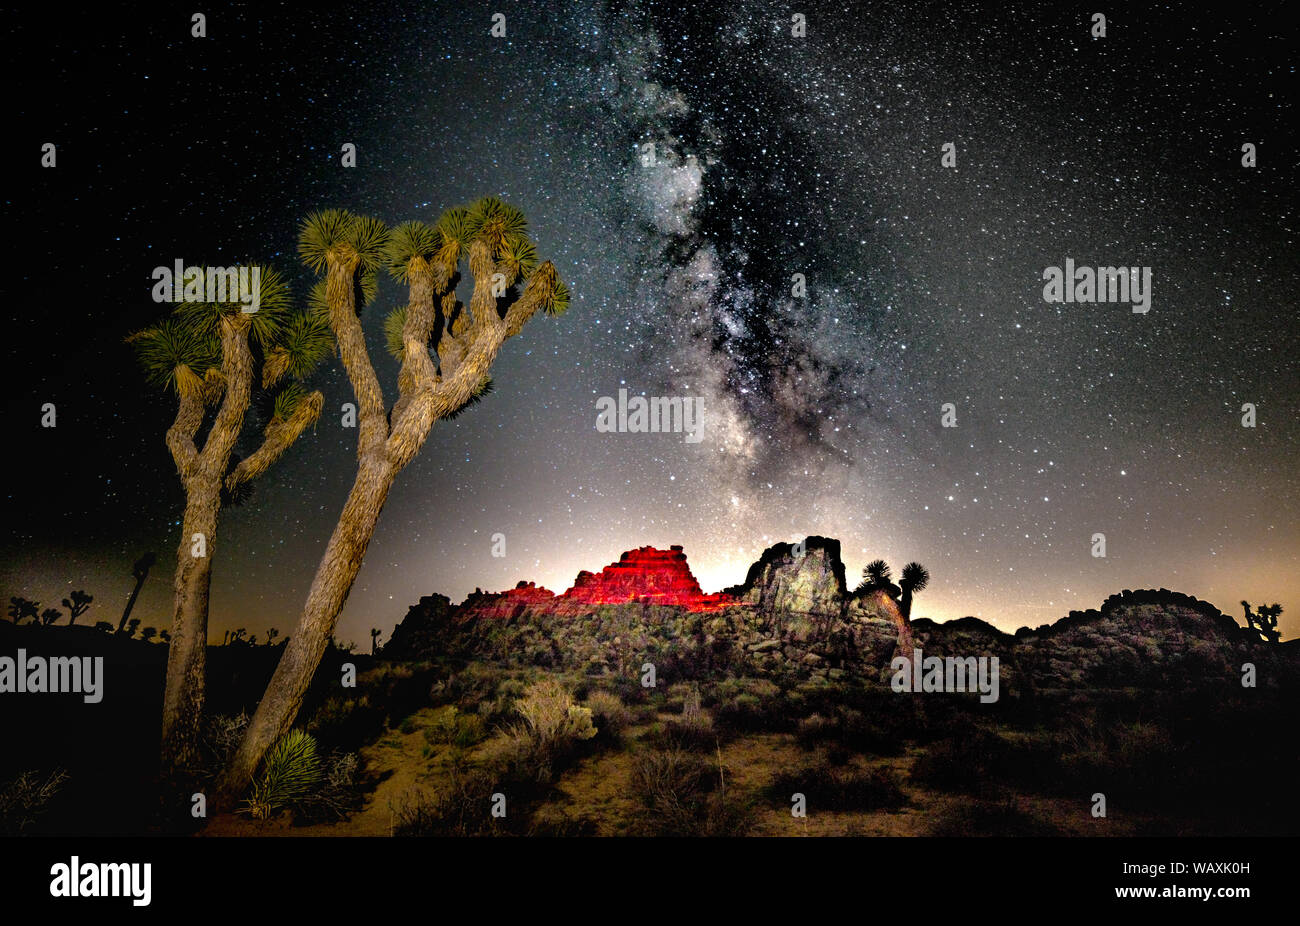 Joshua Tree National Park at Night with Milky Way Stock Photo